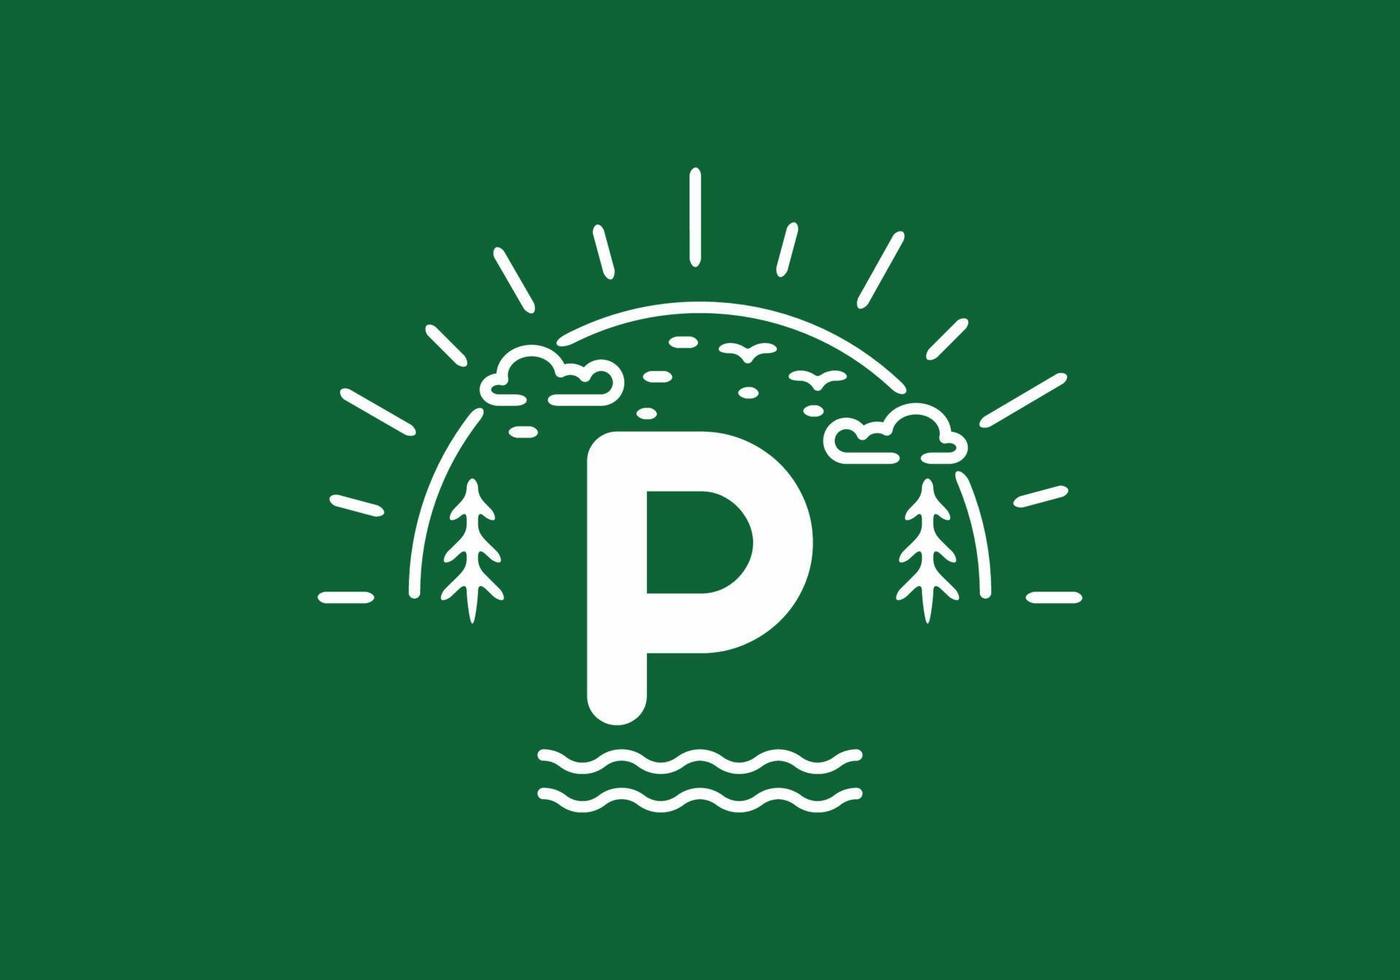 weißes grünes wildes naturabzeichen mit p-anfangsbuchstaben vektor